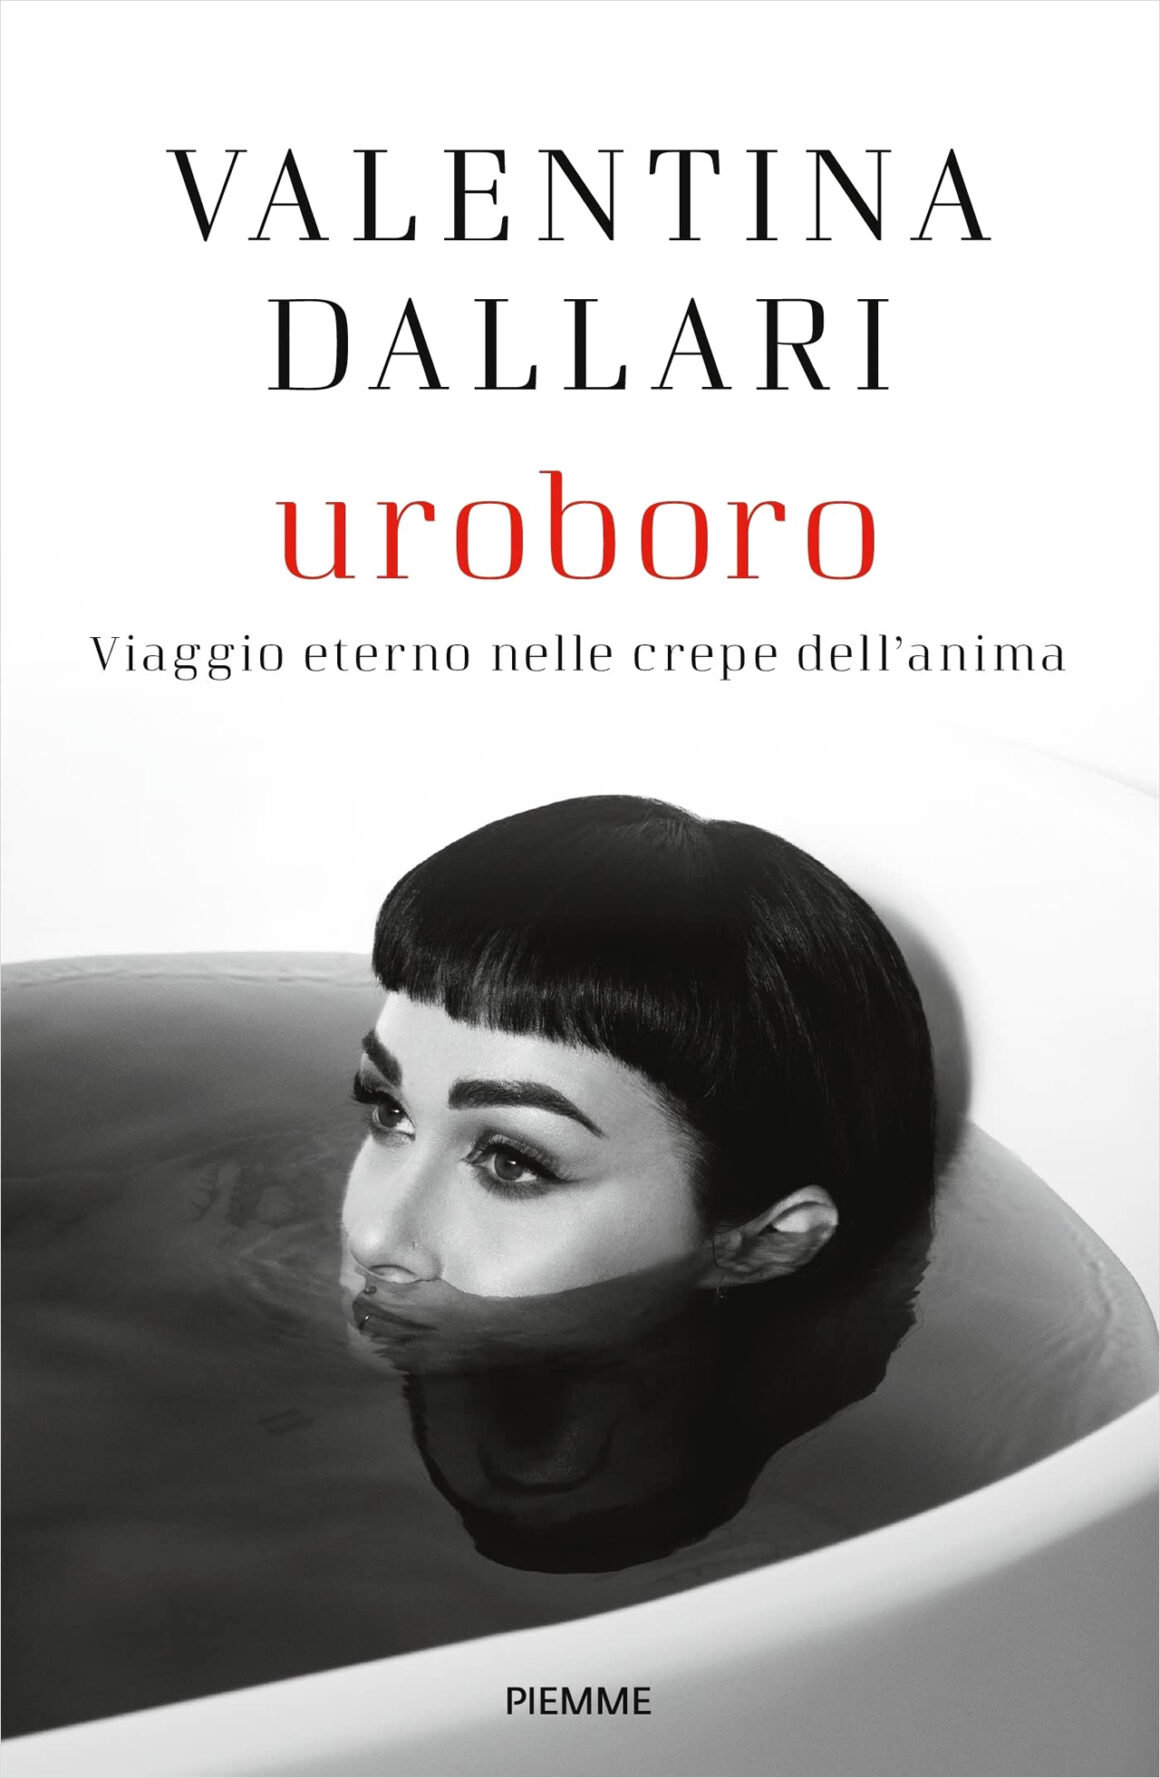 Valentina Dallari, copertina libro